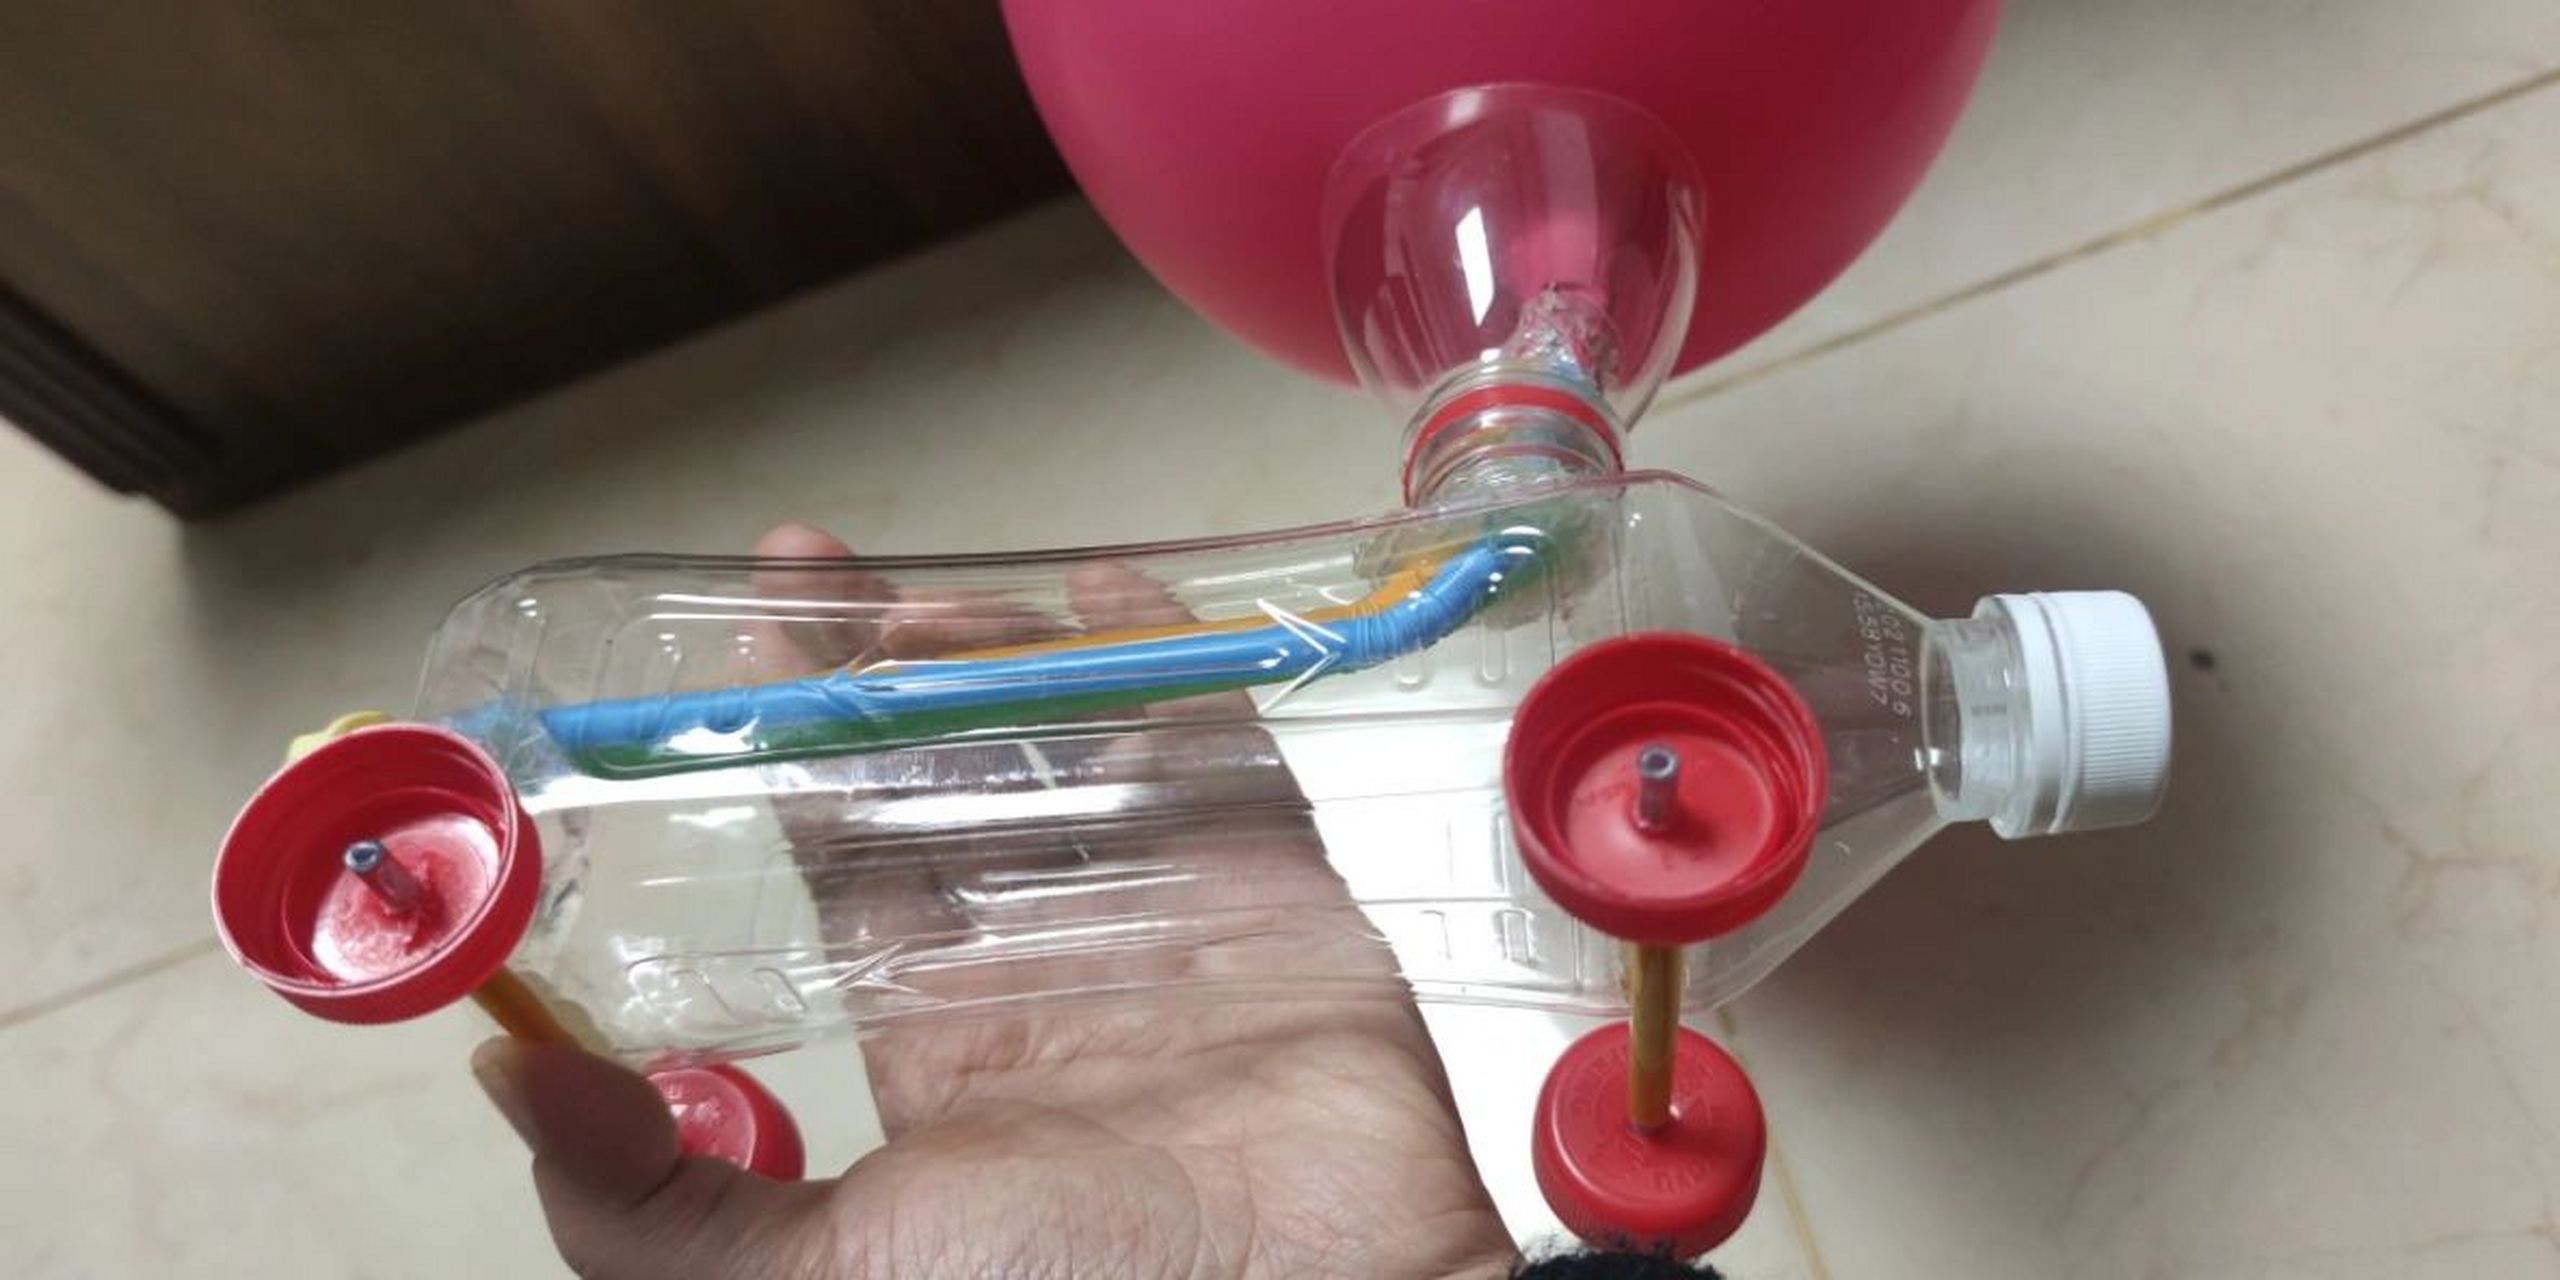 力气球小车 材料:两个气球,塑料瓶(最好是方的,我用的是冰糖雪梨瓶子)